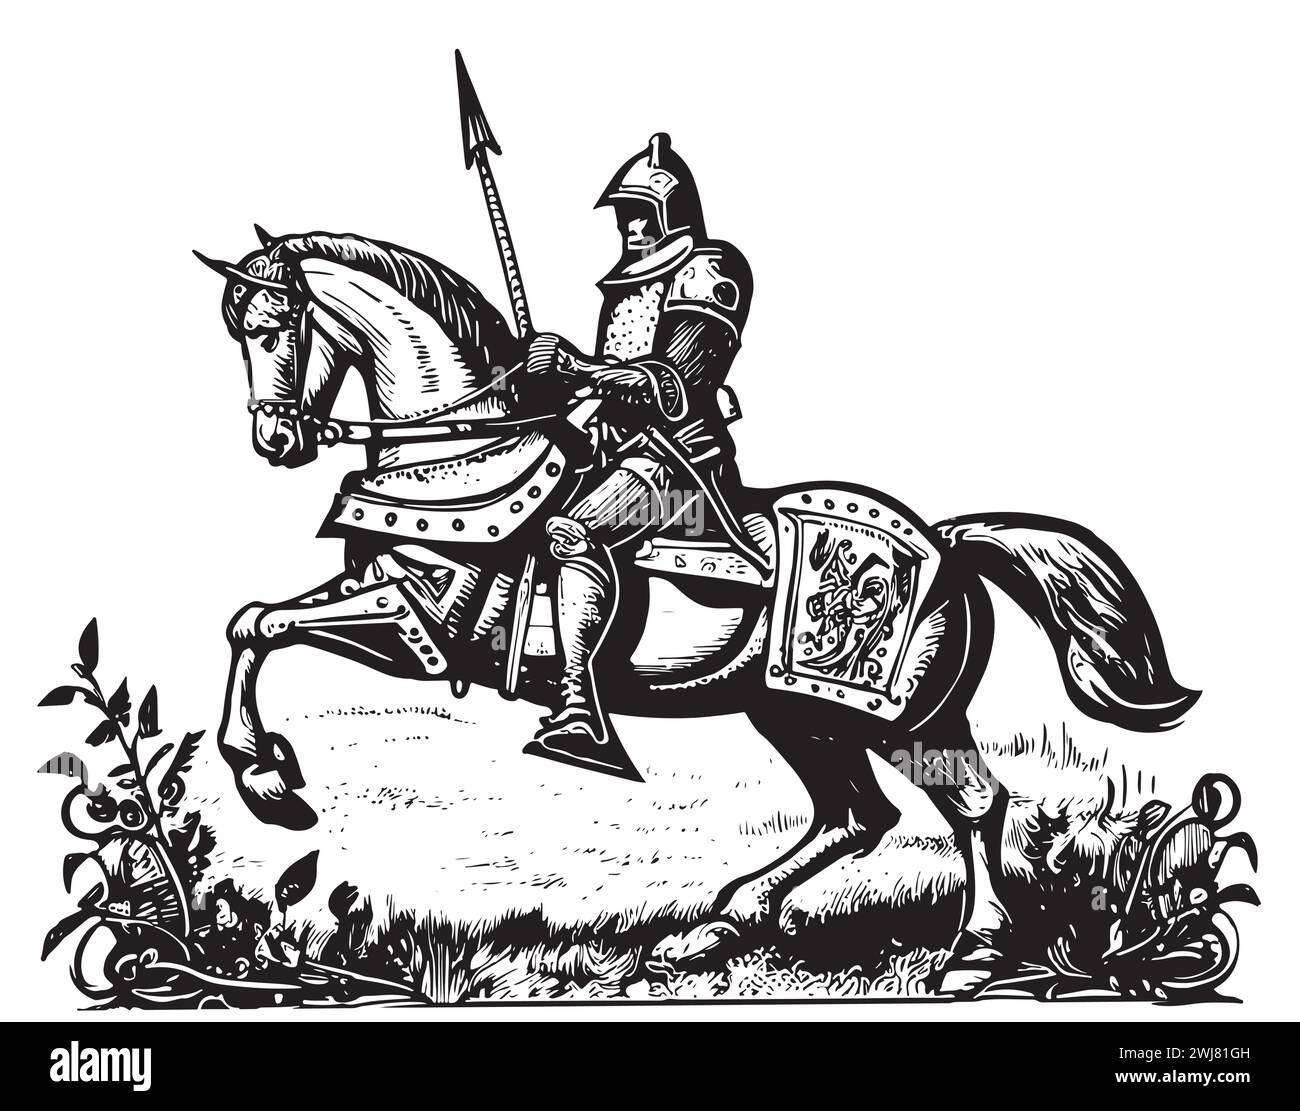 Mittelalterlicher bewaffneter Ritter, der auf einem Pferd reitet. Historischer alter militärischer Charakter. Prinz mit Schwert und Schild. Alte Kämpfer. Vintage-Vektorskizze. E Stock Vektor